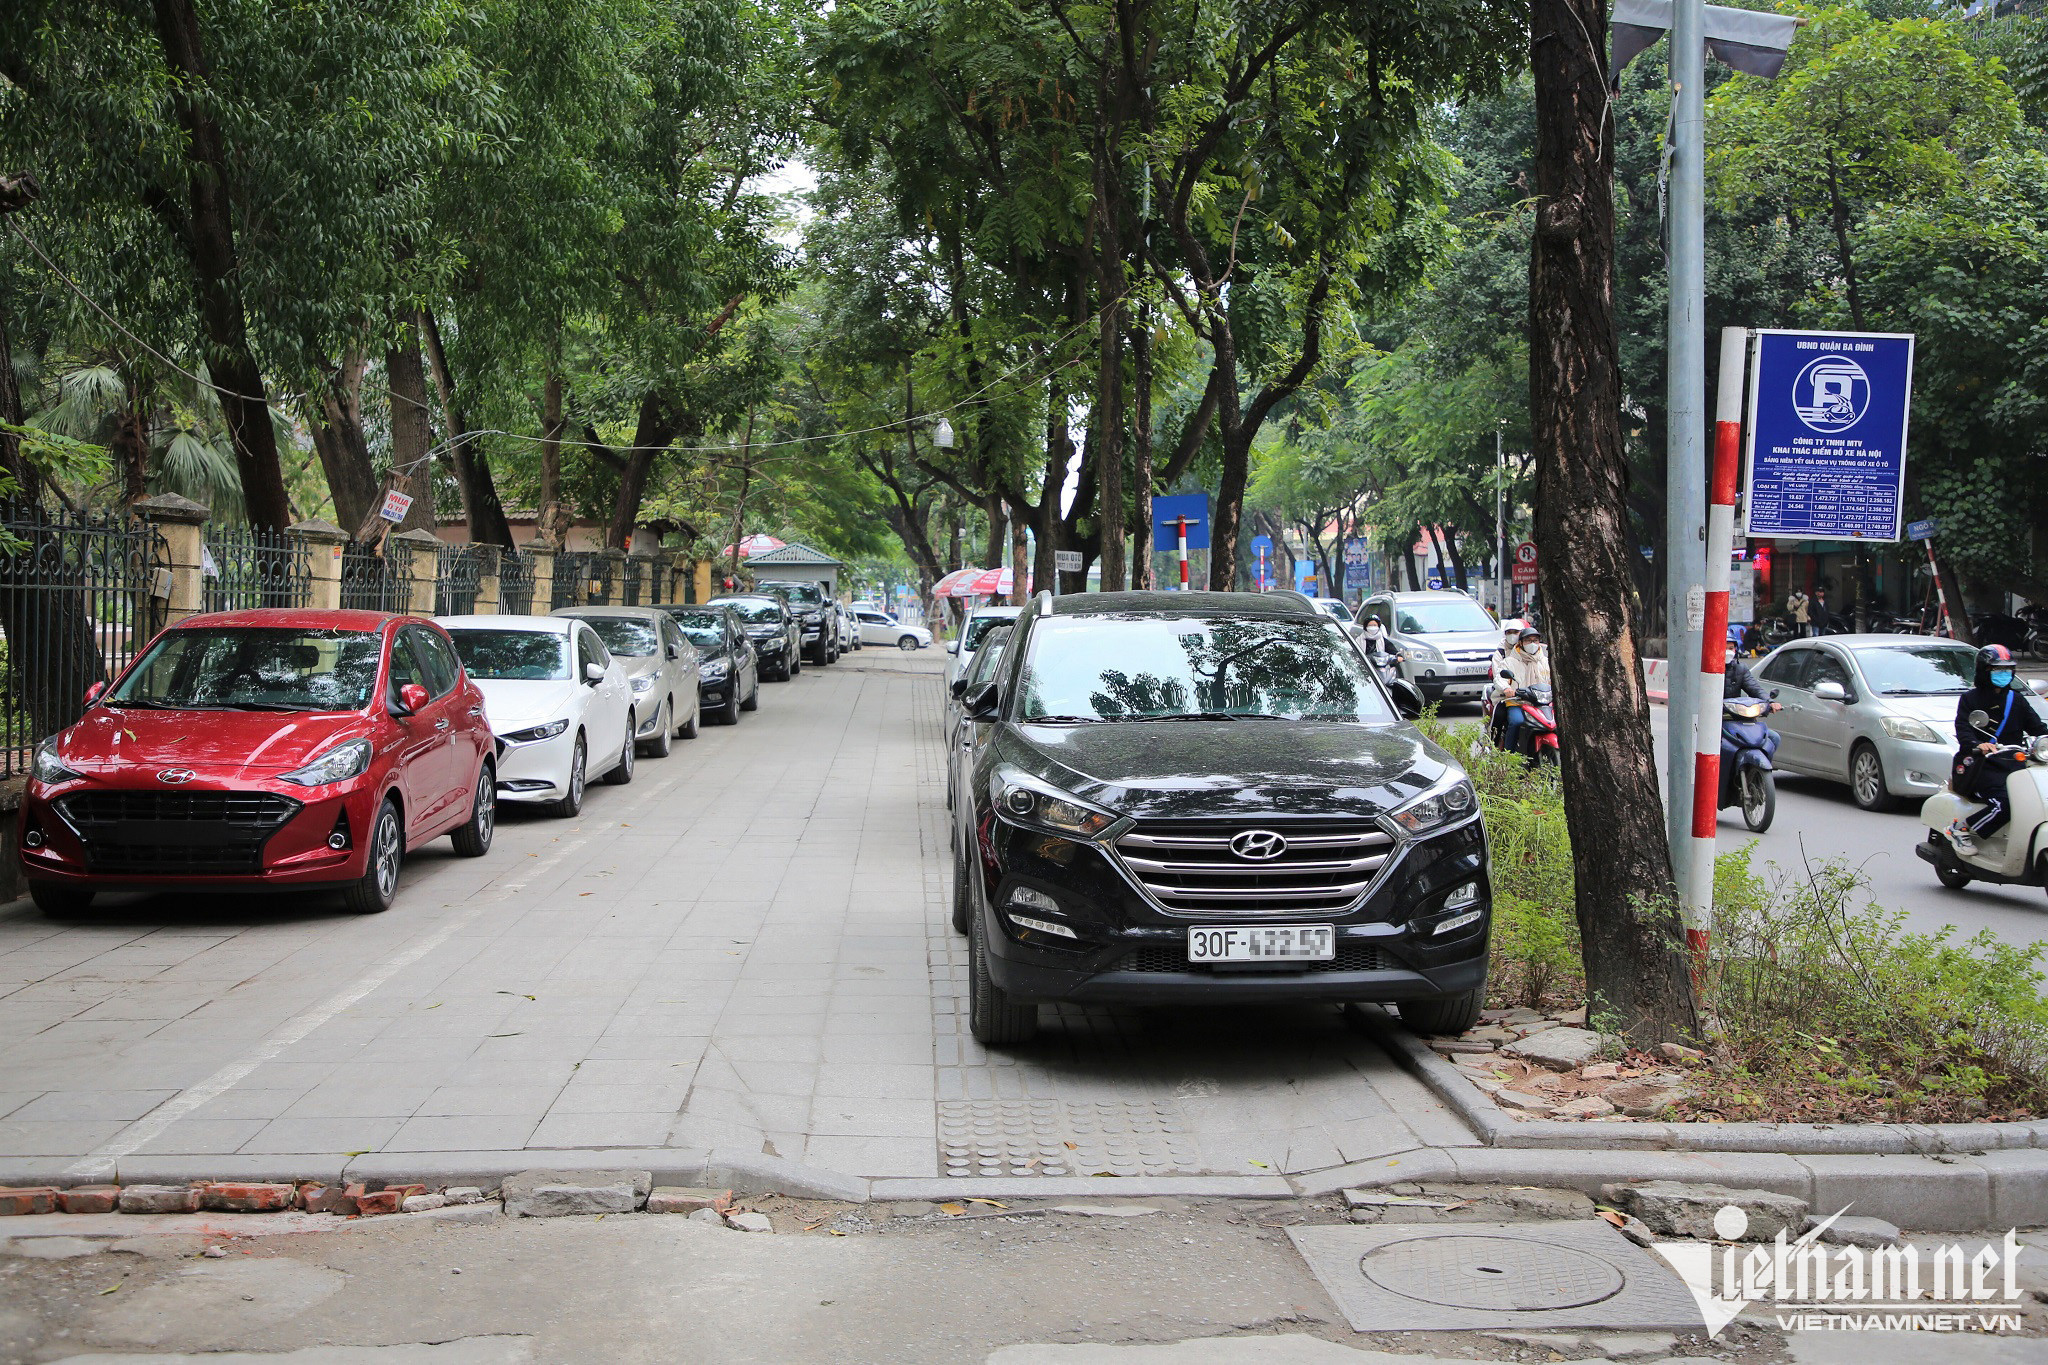 Chủ tịch Hà Nội yêu cầu dừng điểm đỗ xe gây hỏng hè phố